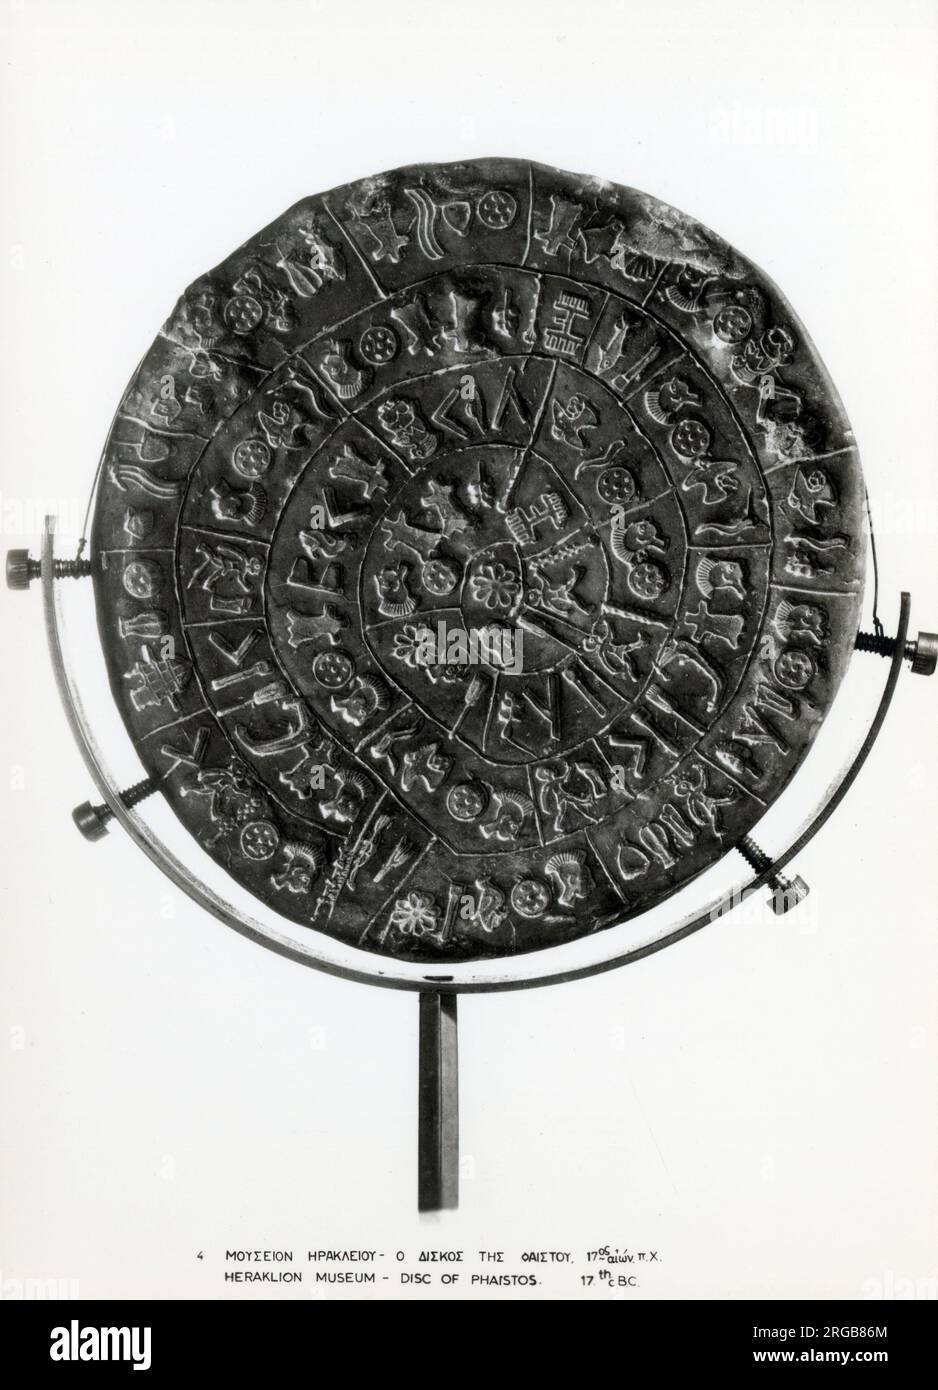 Die Phaistos Disc (auch Phaistos Disk genannt, Phaestos Disc) ist eine Scheibe aus gebranntem Ton aus dem minoischen Palast von Phaistos auf der Insel Kreta, möglicherweise aus der mittleren oder späten minoischen Bronzezeit (zweites Jahrtausend v. Chr.). Die Scheibe hat einen Durchmesser von ca. 15 cm (5,9 Zoll) und ist auf beiden Seiten mit einer Spirale von gestanzten Symbolen bedeckt. Die Phaistos Disc wurde im minoischen Palast von Phaistos in der Nähe der Hagia Triada an der Südküste Kretas entdeckt. Stockfoto